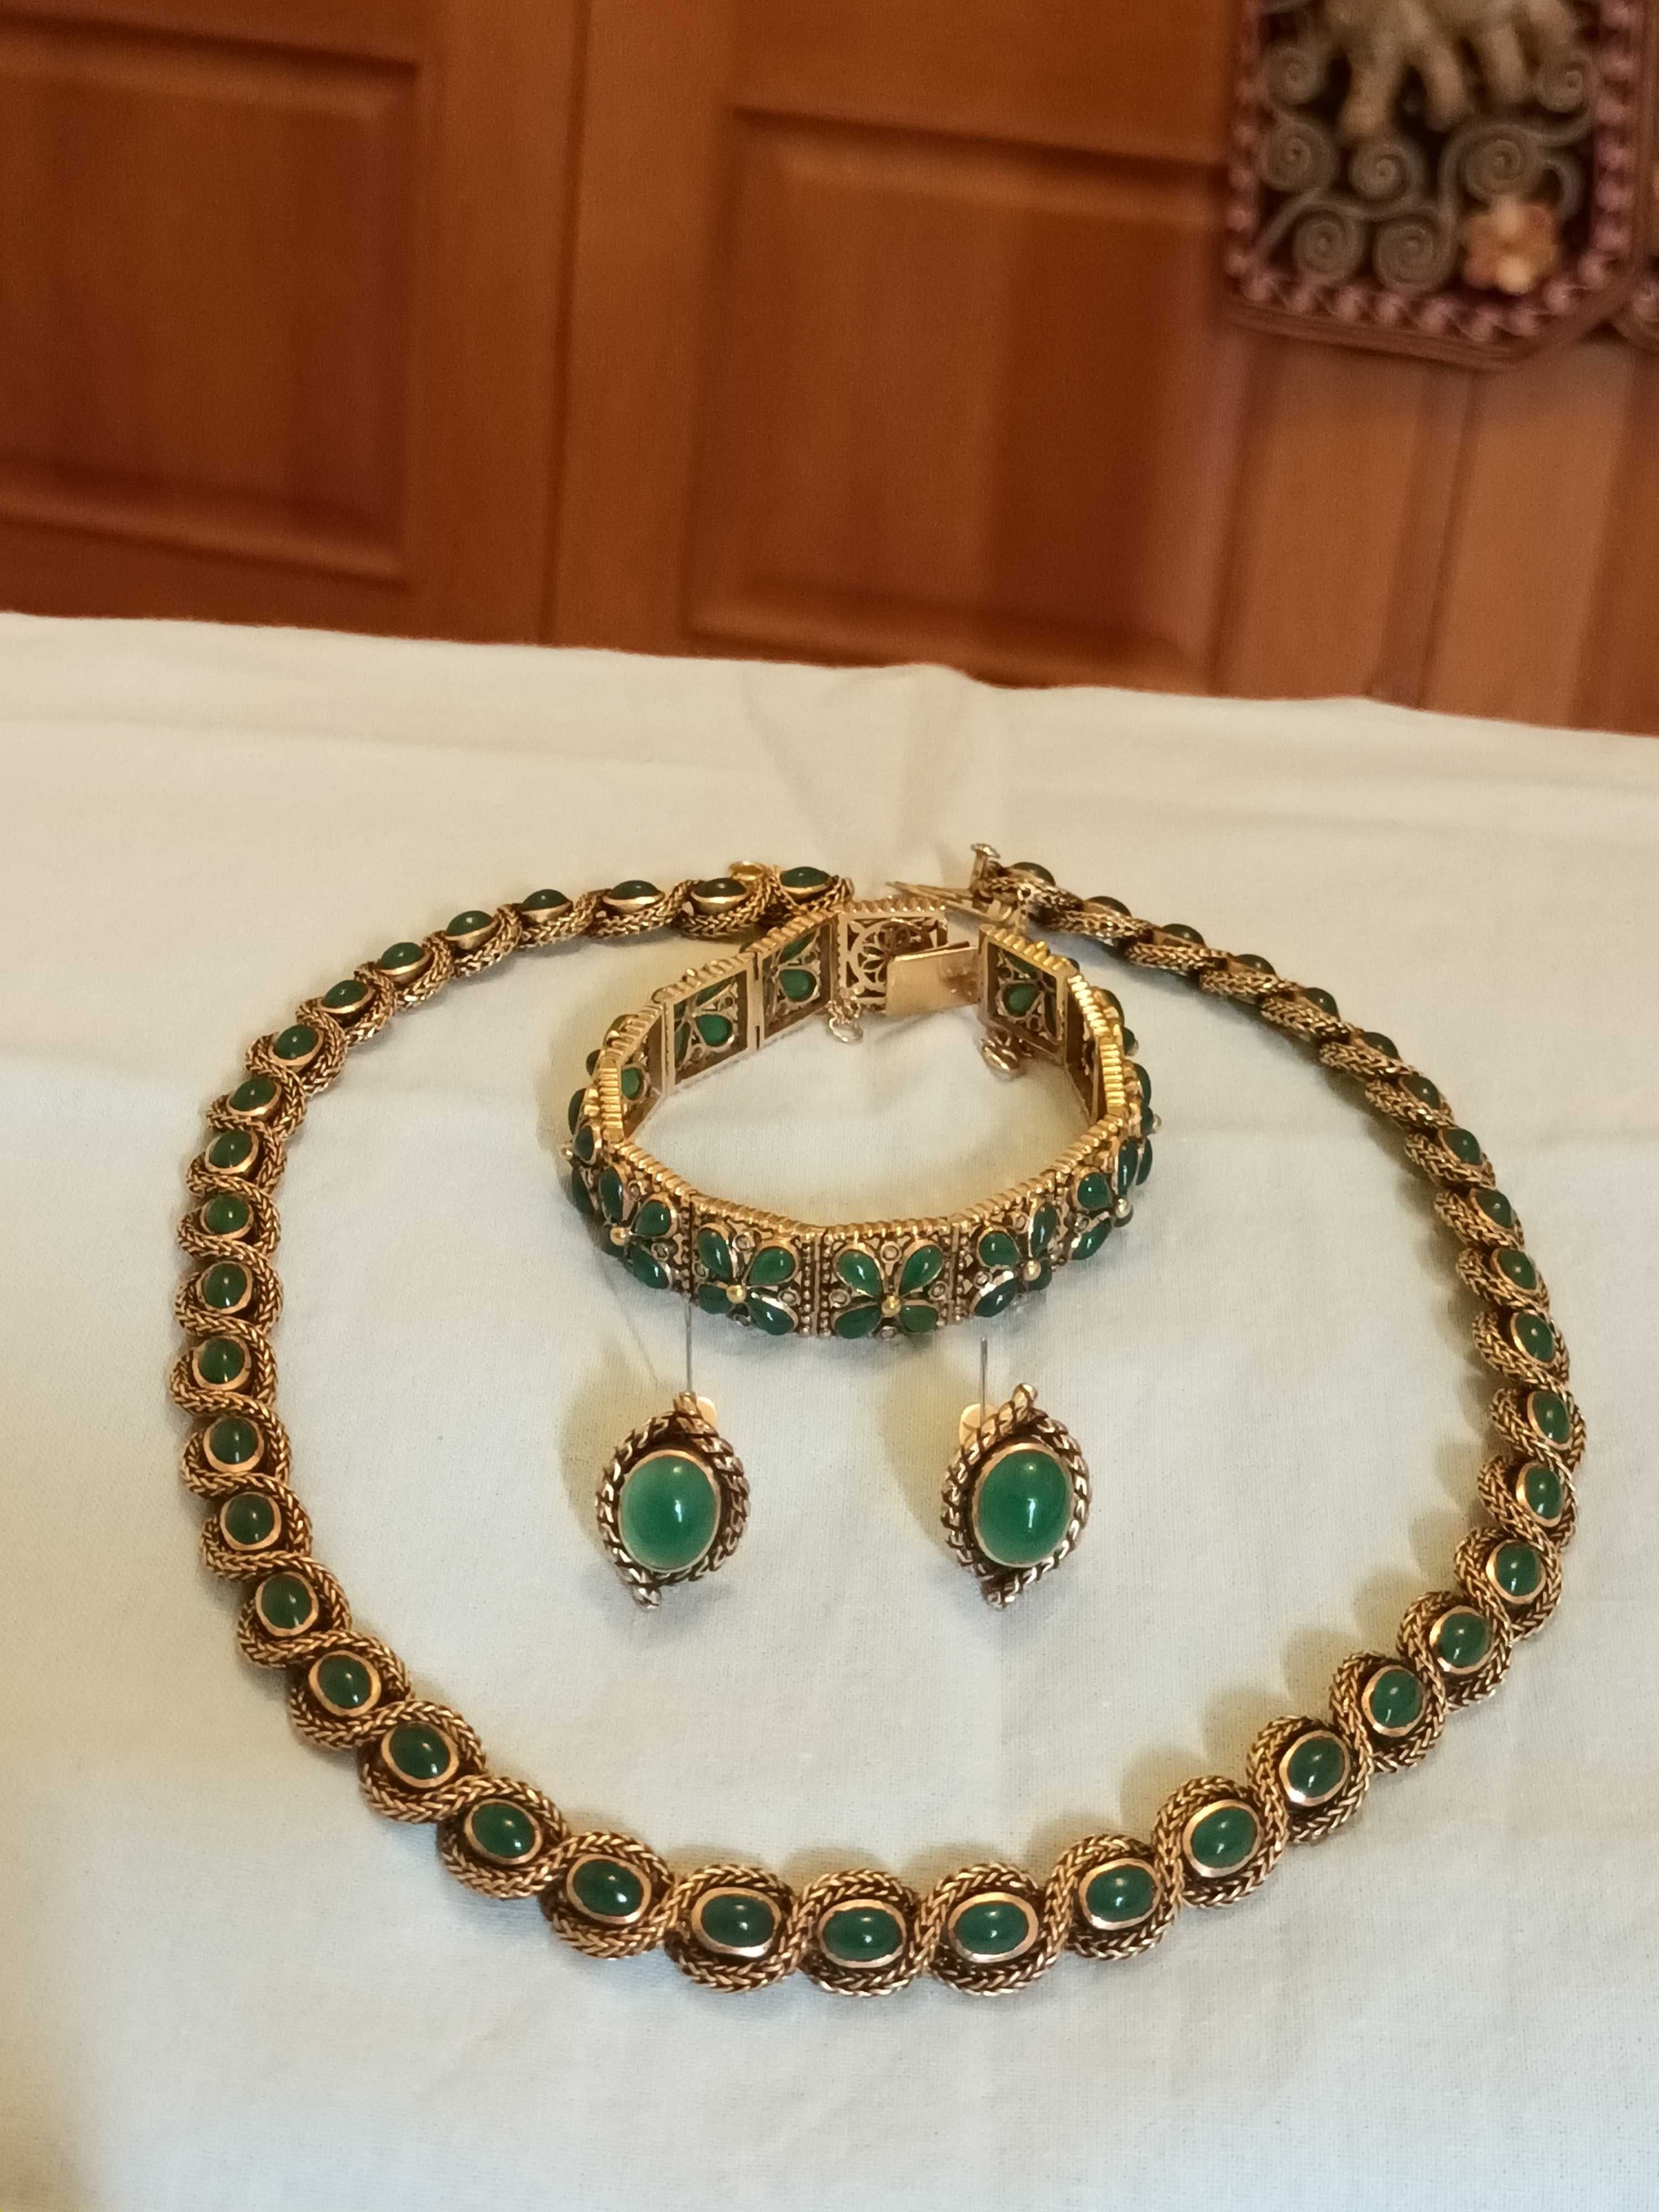 Conjunto de colar, pulseira e par de brincos em ouro e pedras verdes